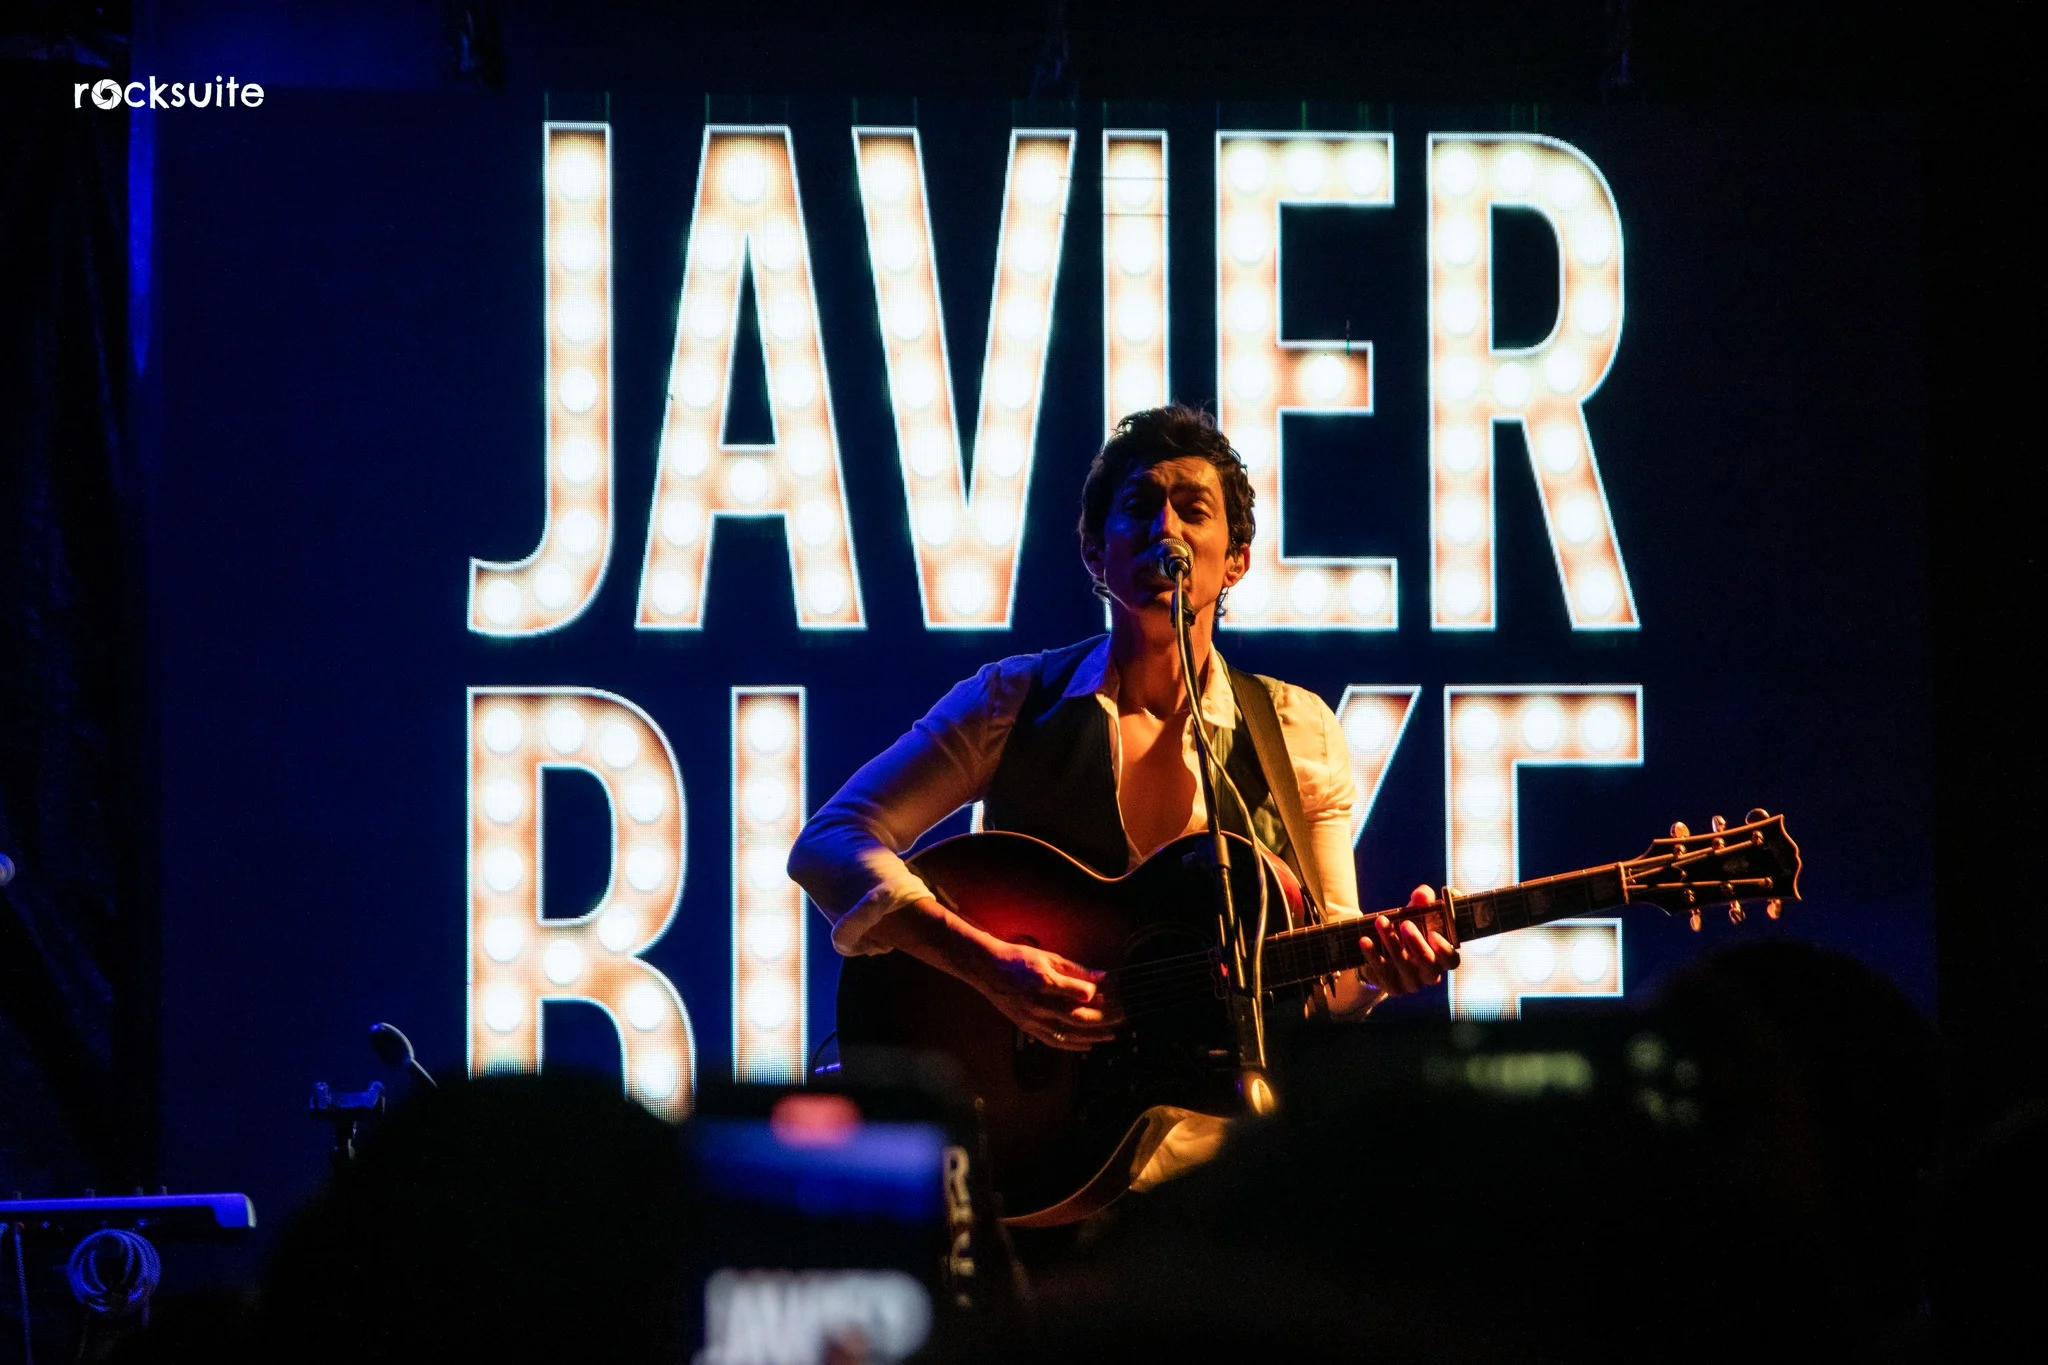 Javier Blake anuncia conciertos como solista en CDMX y Guadalajara